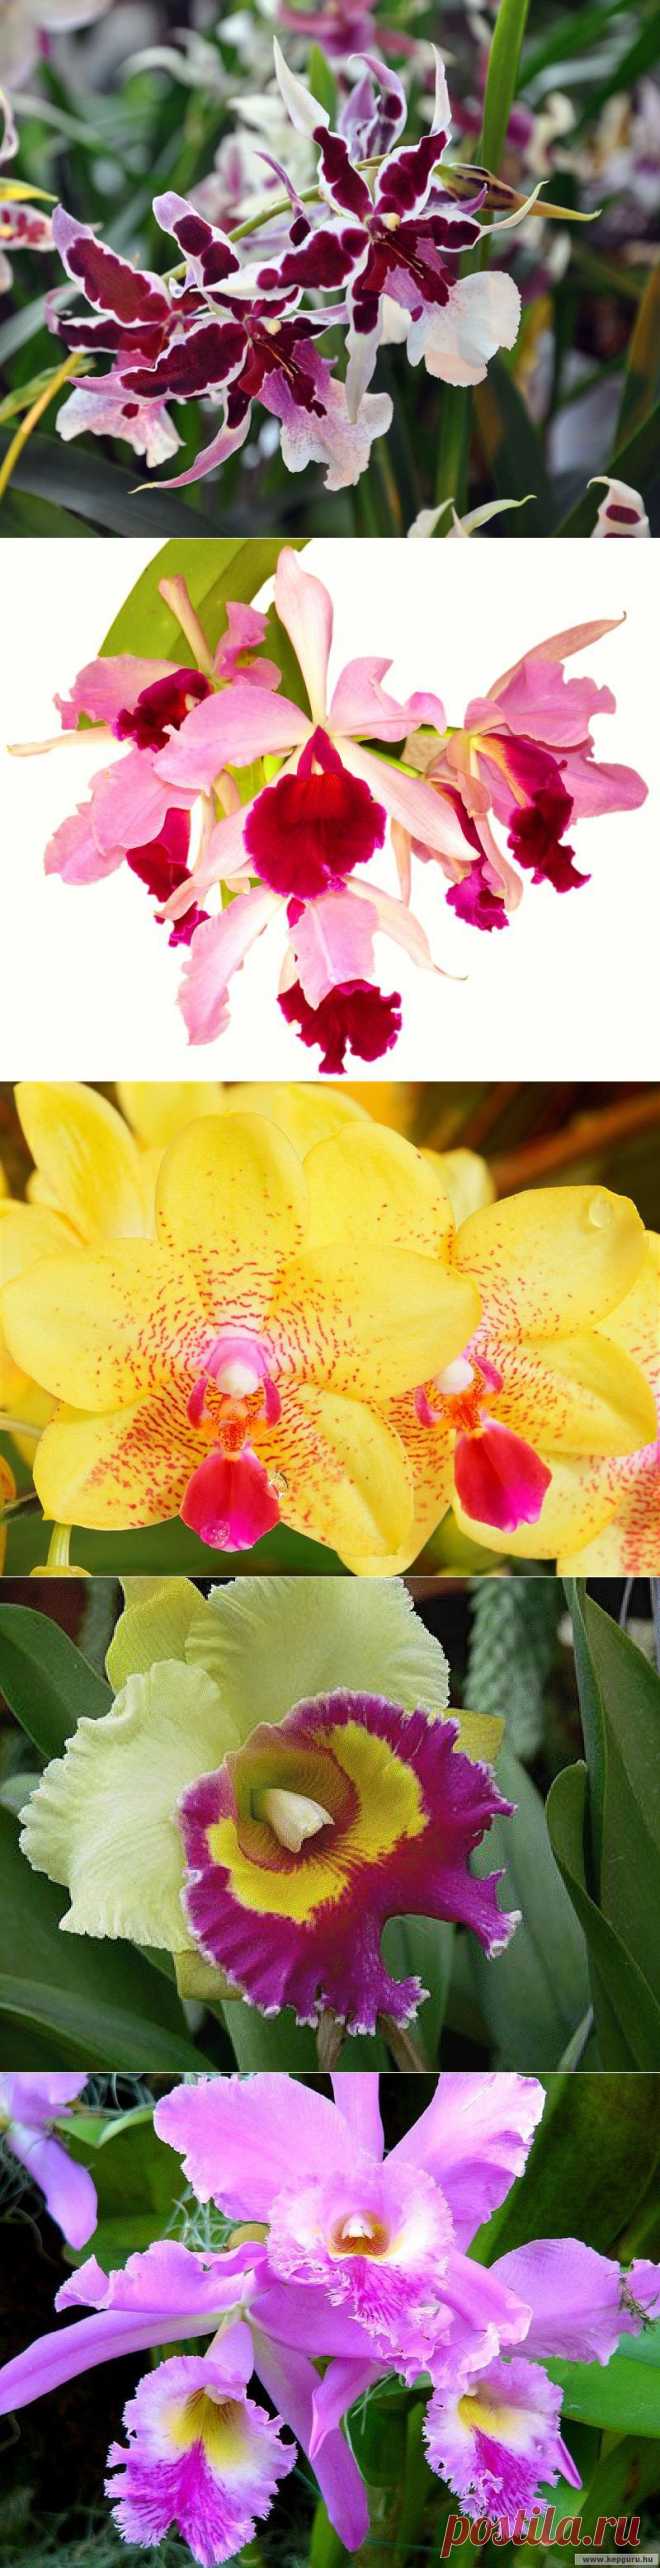 Орхидеи - любовь с первого взгляда...